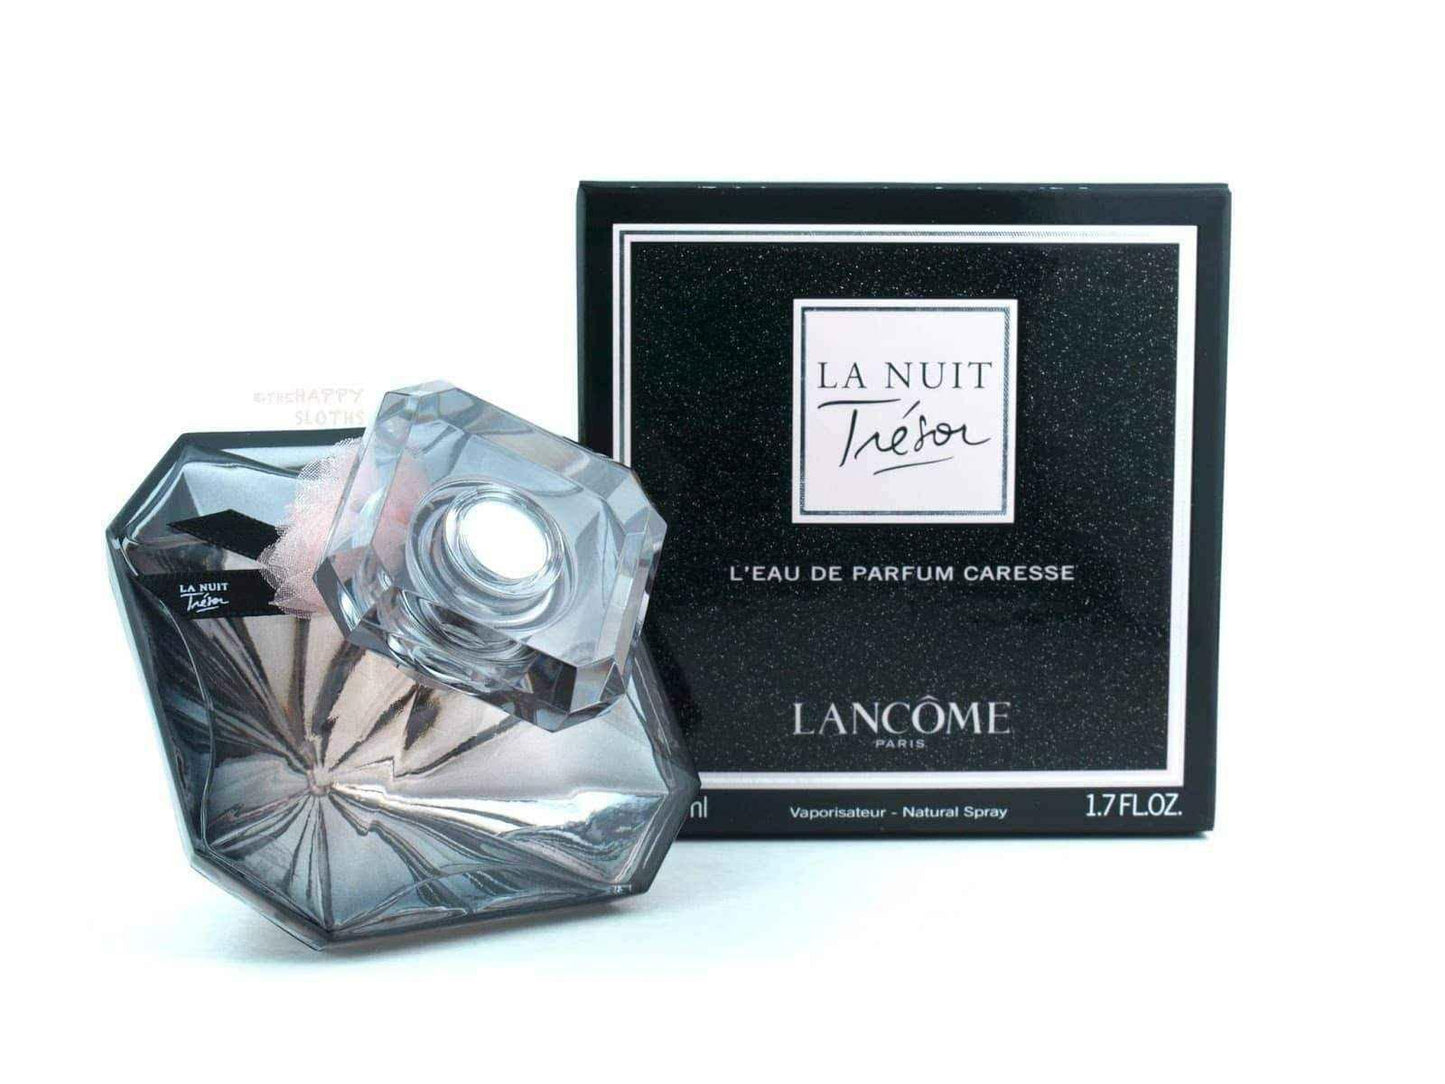 Lancome La Nuit Tresor Caresse Eau de Parfum 50ml Spray UK